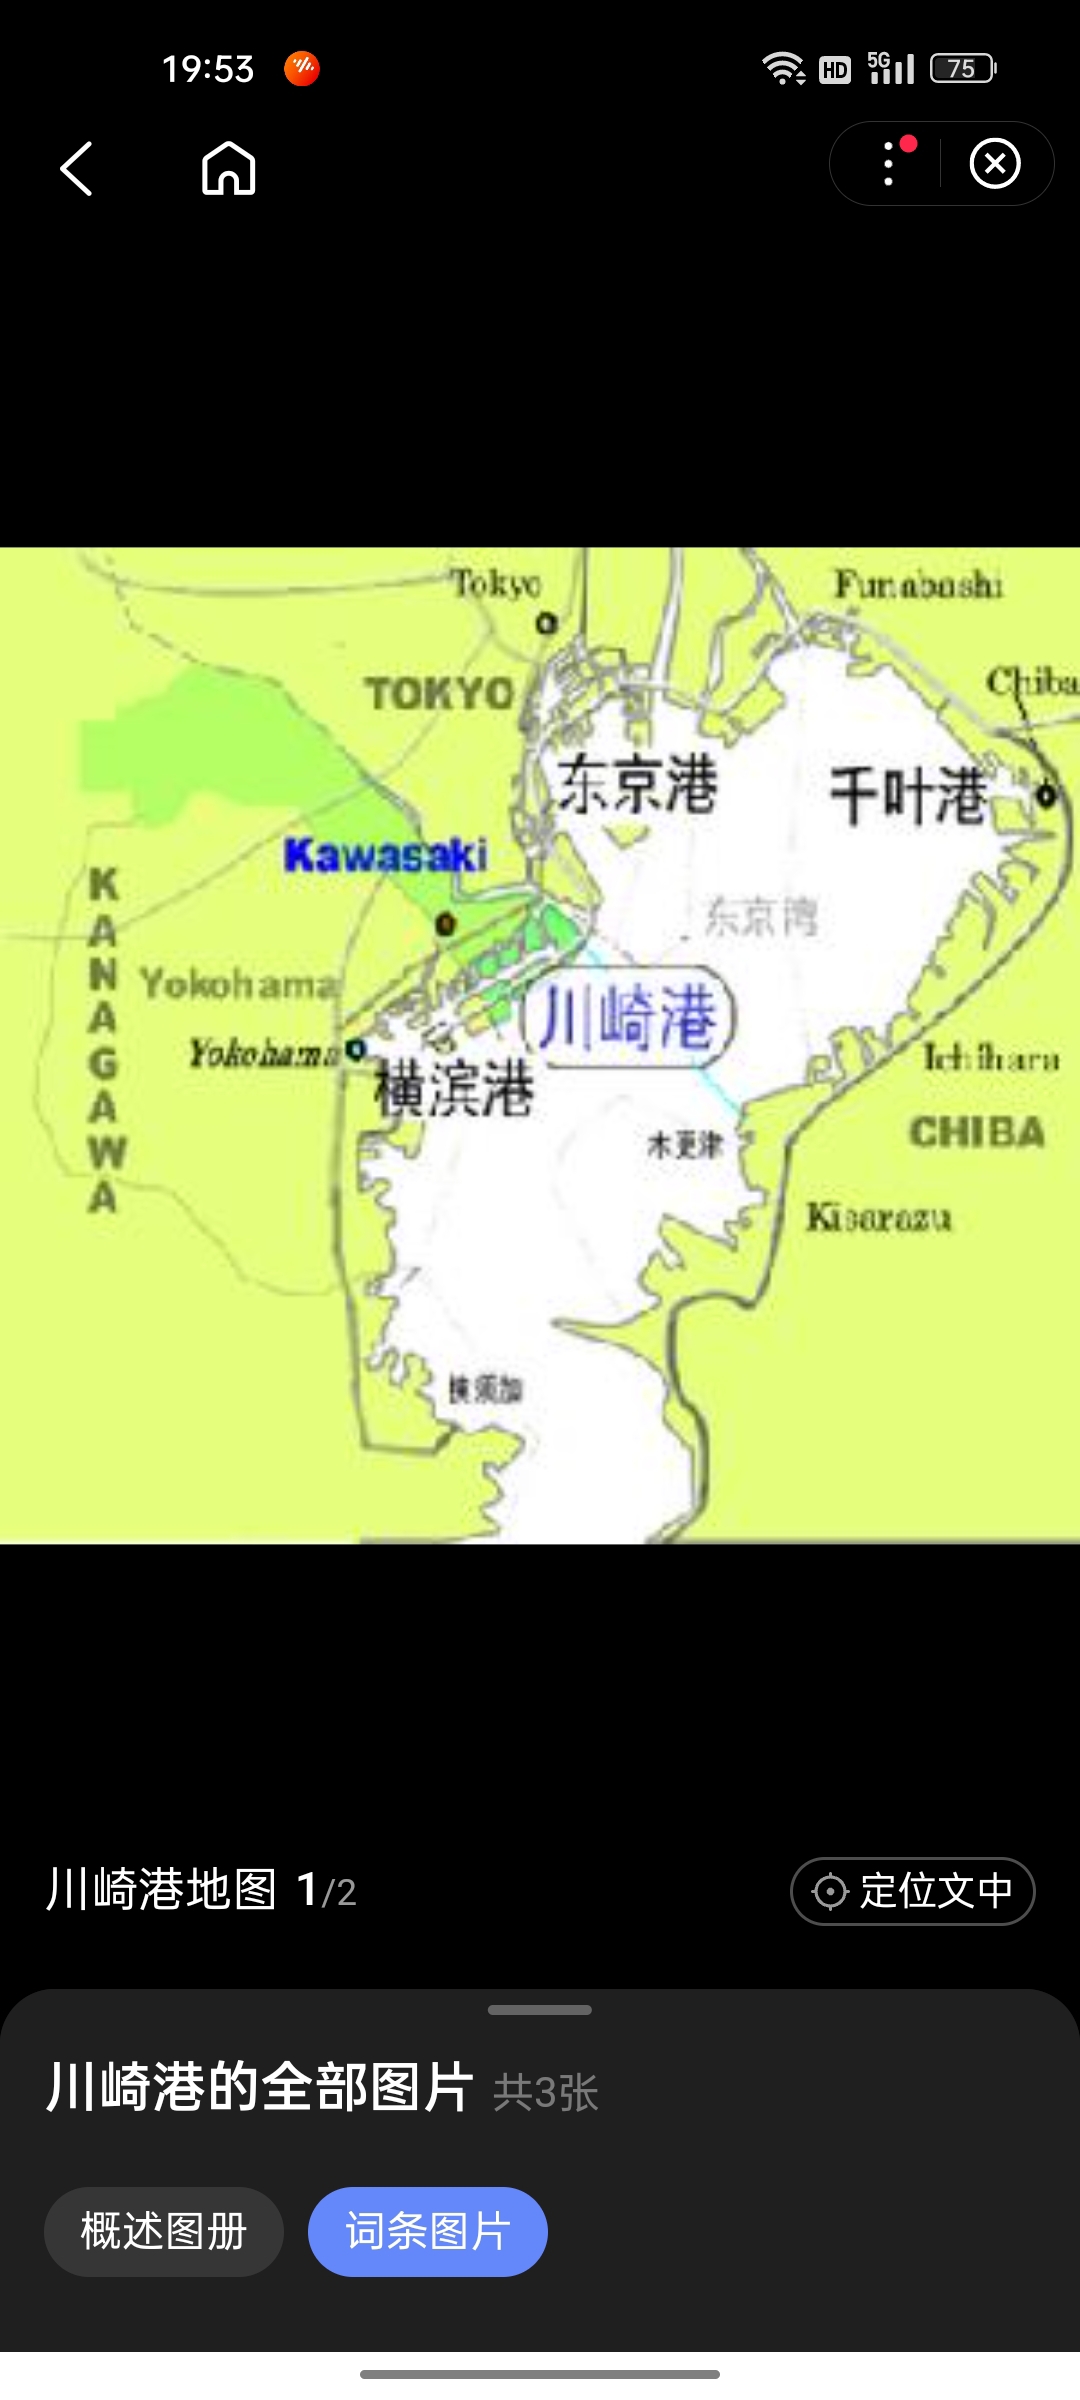 川崎港是京滨工业地带的中心工业港，也是做为能源的供应基地，支撑着首都圈的产业和市民的生活。2008年